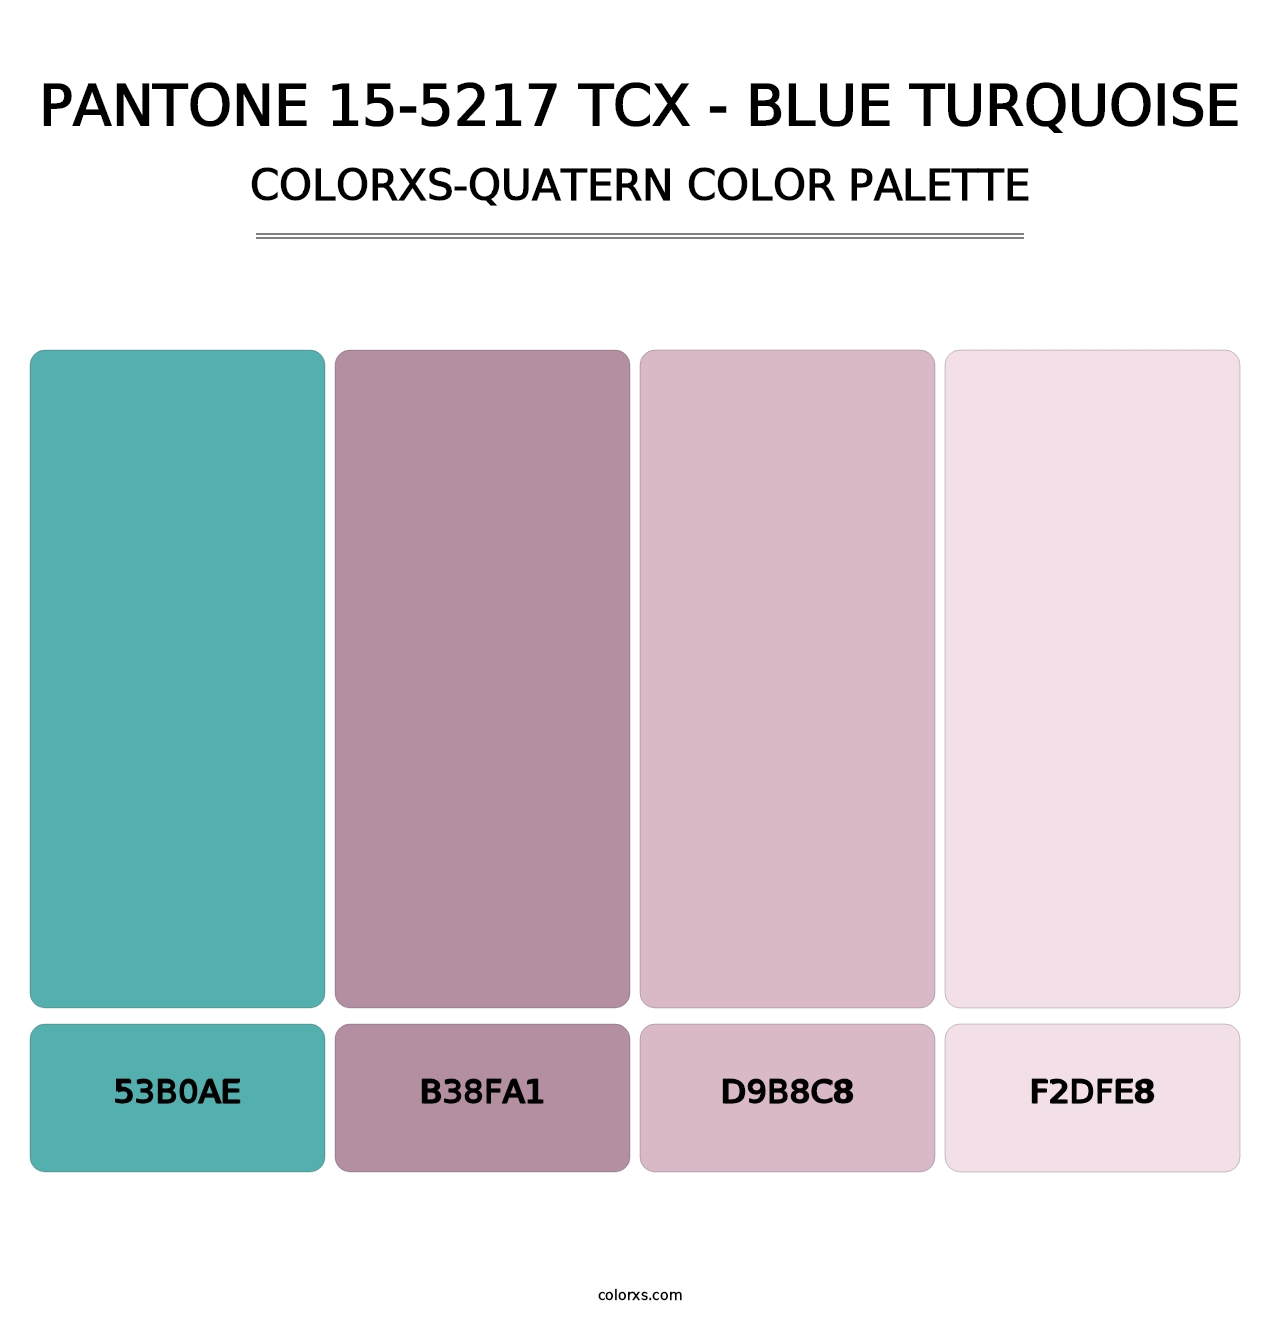 PANTONE 15-5217 TCX - Blue Turquoise - Colorxs Quatern Palette